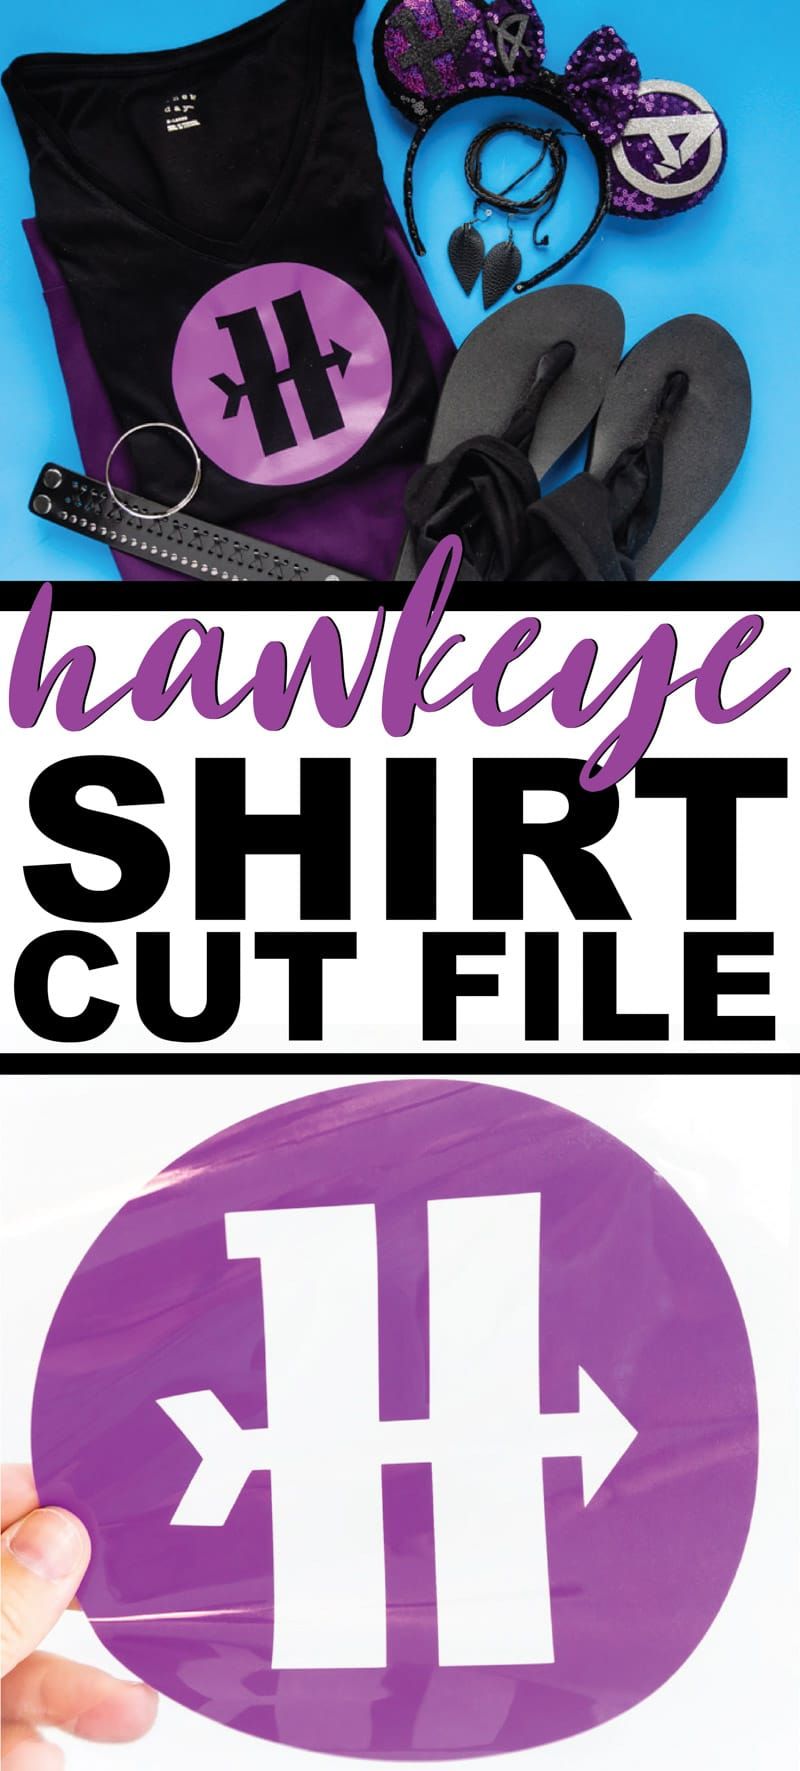 Tehke see lihtne Marvel Hawkeye särk tasuta Hawkeye sümboliga SVG lõigatud failiga! Ideaalne teie enda DIY kostüümi jaoks, Disneybounding nagu Hawkeye või lihtsalt oma Marveli lemmikkangelase toetamine!